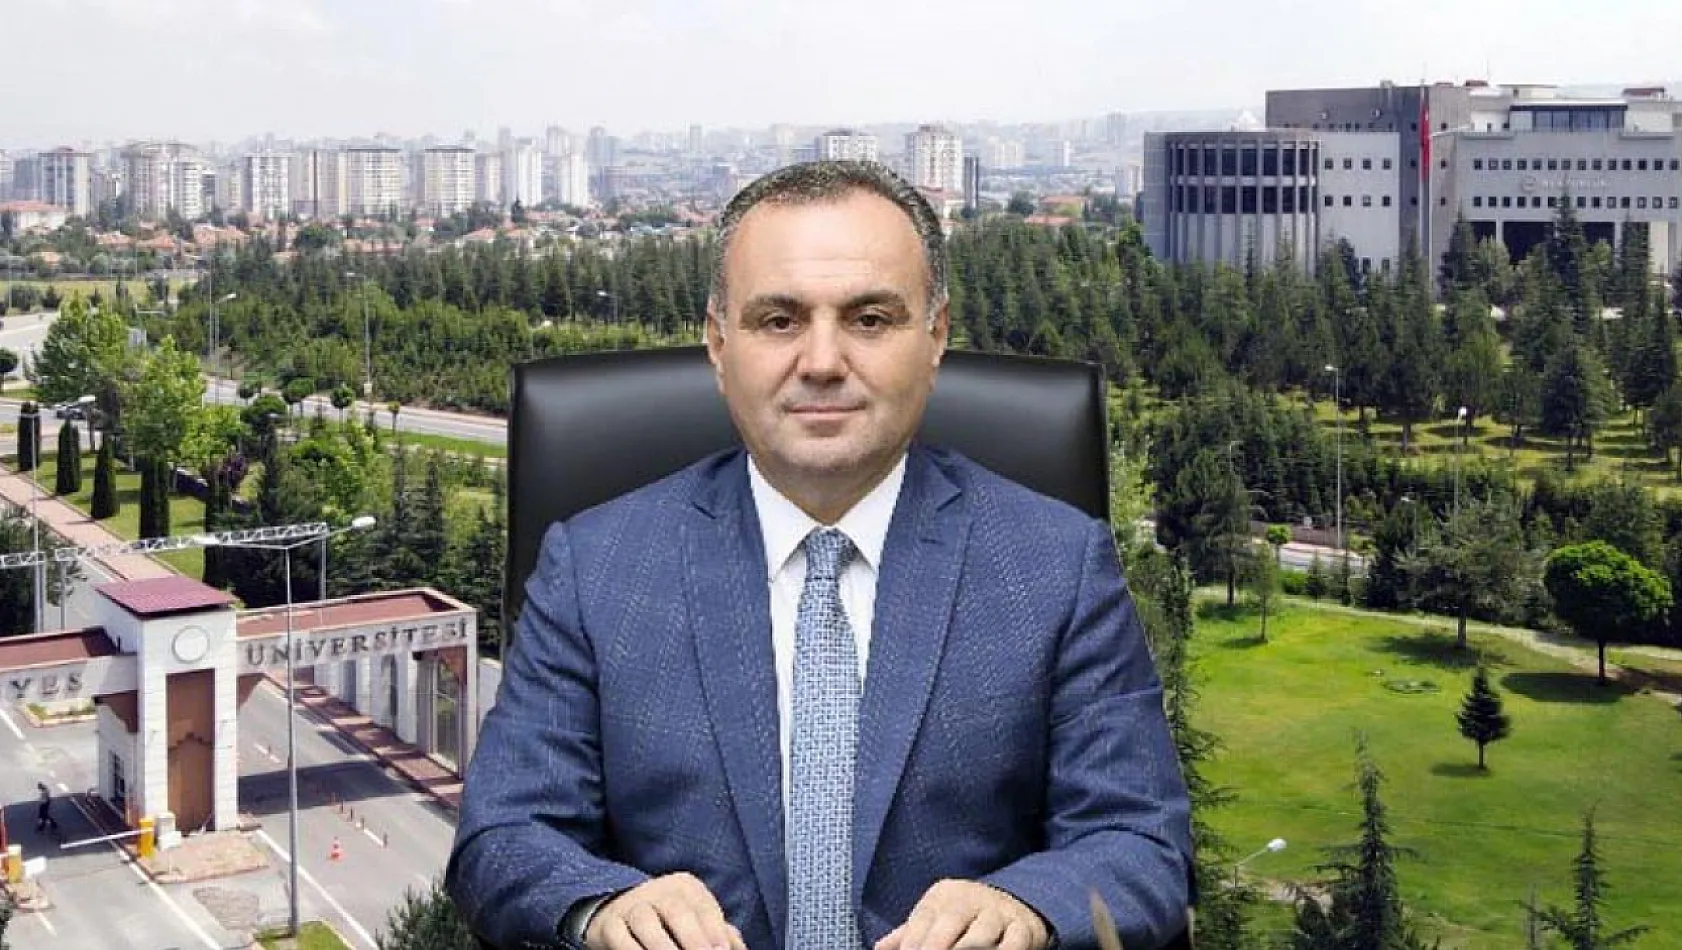 Kayseri Erciyes Üniversitesi bir ilki başardı! Rektör: Bunu yapan başka bir üniversite yok